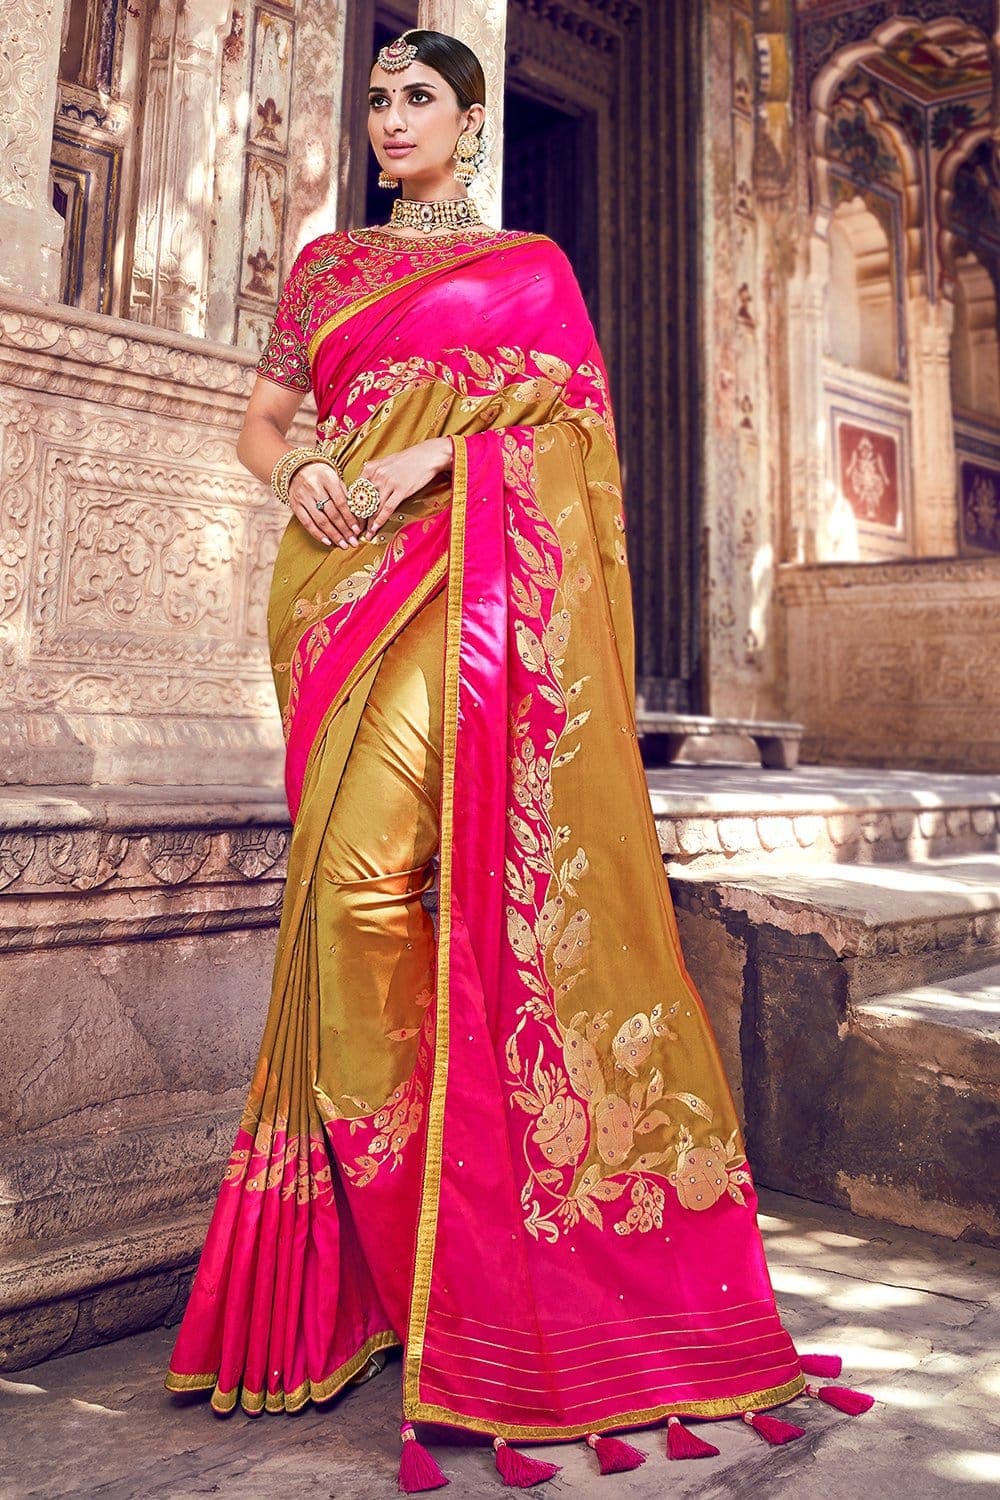 Banarasi Saree Goldenrod Yellow And Pink Banarasi Saree With Embroidered Silk Blouse saree online